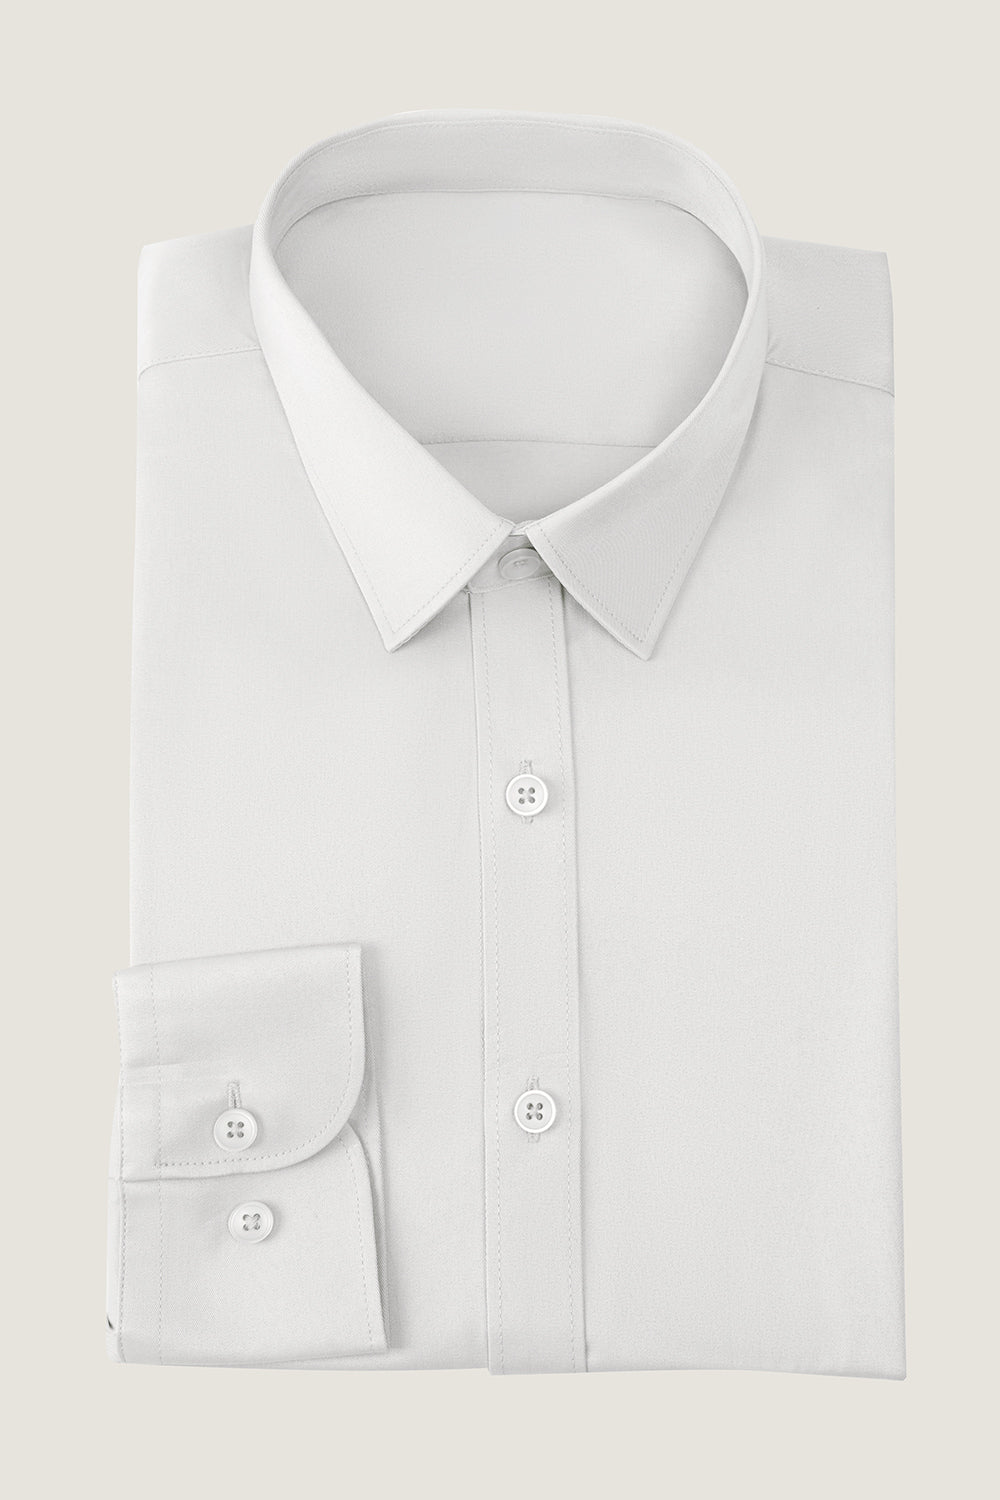 Weißes Einfarbig Langarm Shirt Herren Anzug Hemd